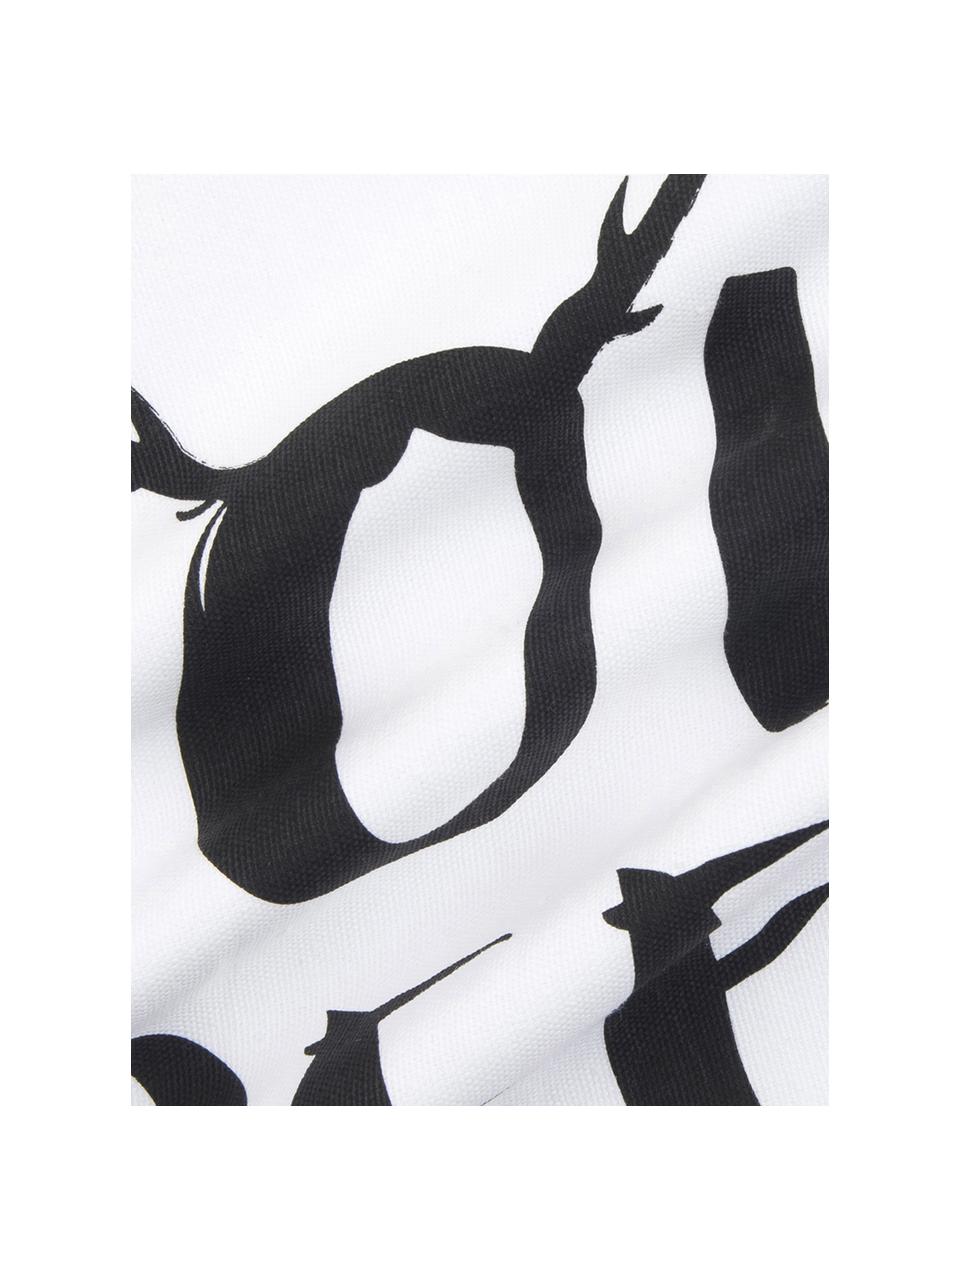 Kissenhülle Oh Deer mit Aufschrift, Baumwolle, Schwarz, Weiß, B 40 x L 40 cm